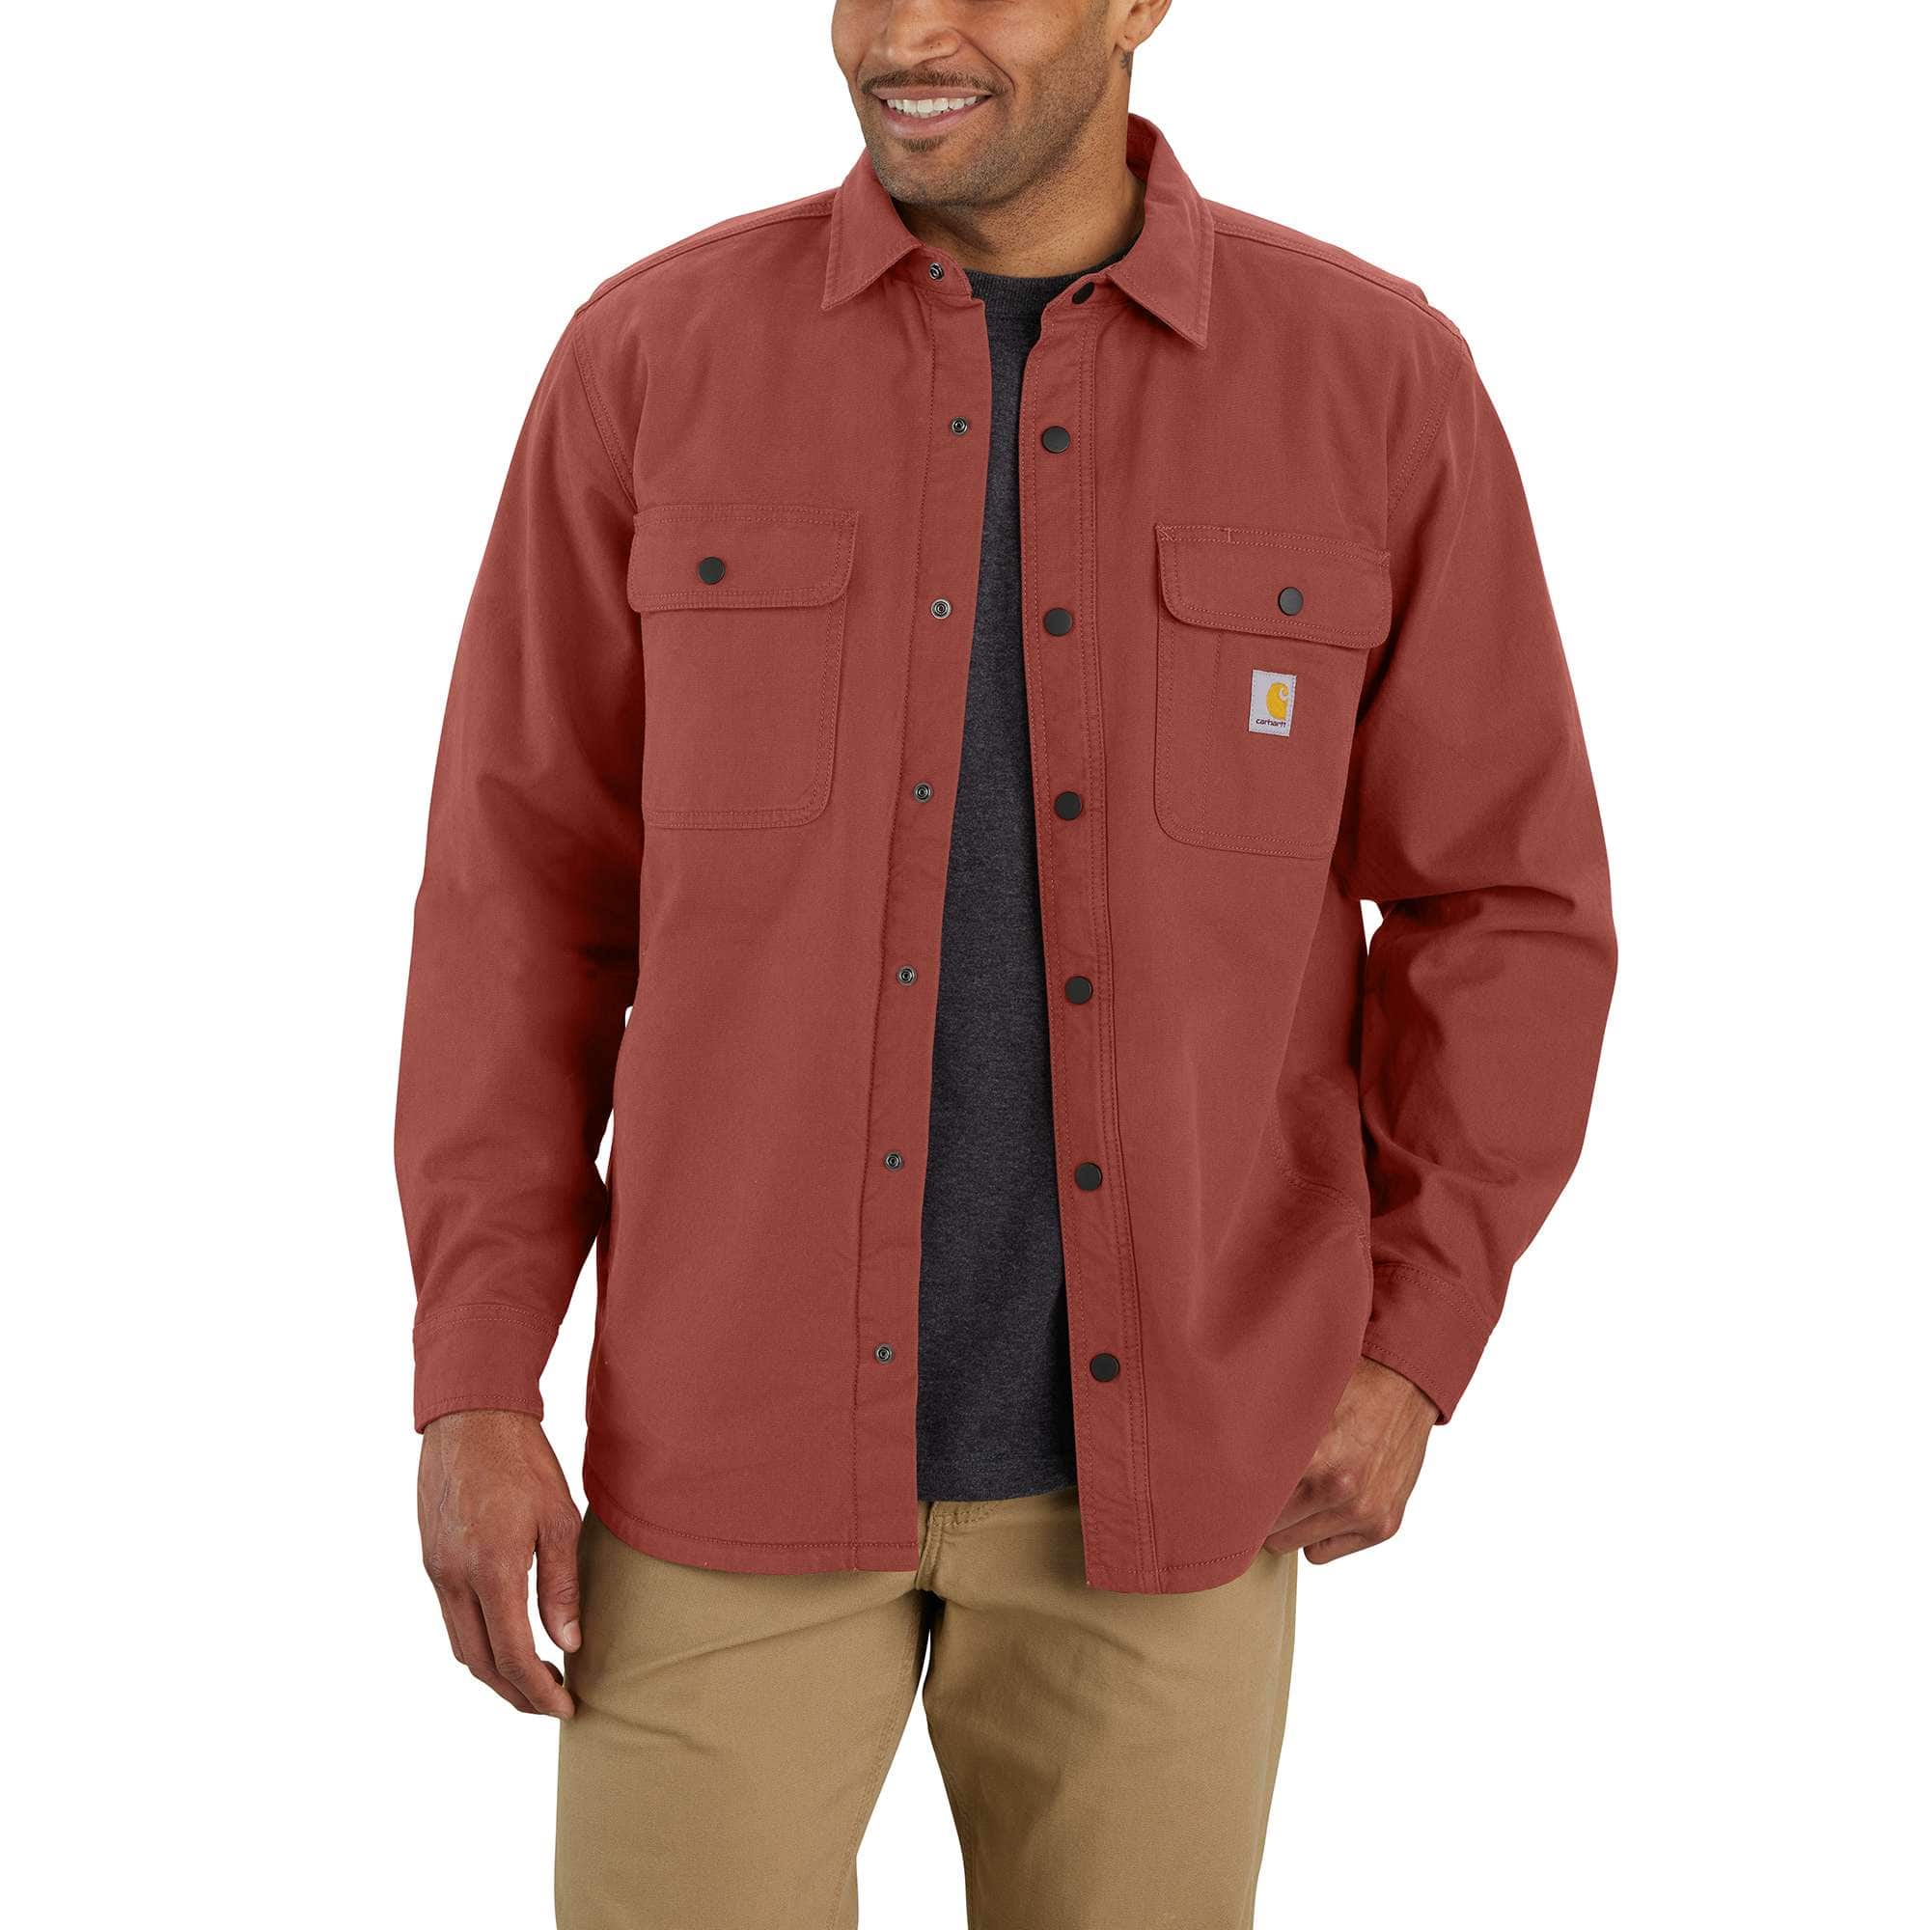 Carhartt Twill Long Sleeve Work Shirt Button Front S224, $24, .com